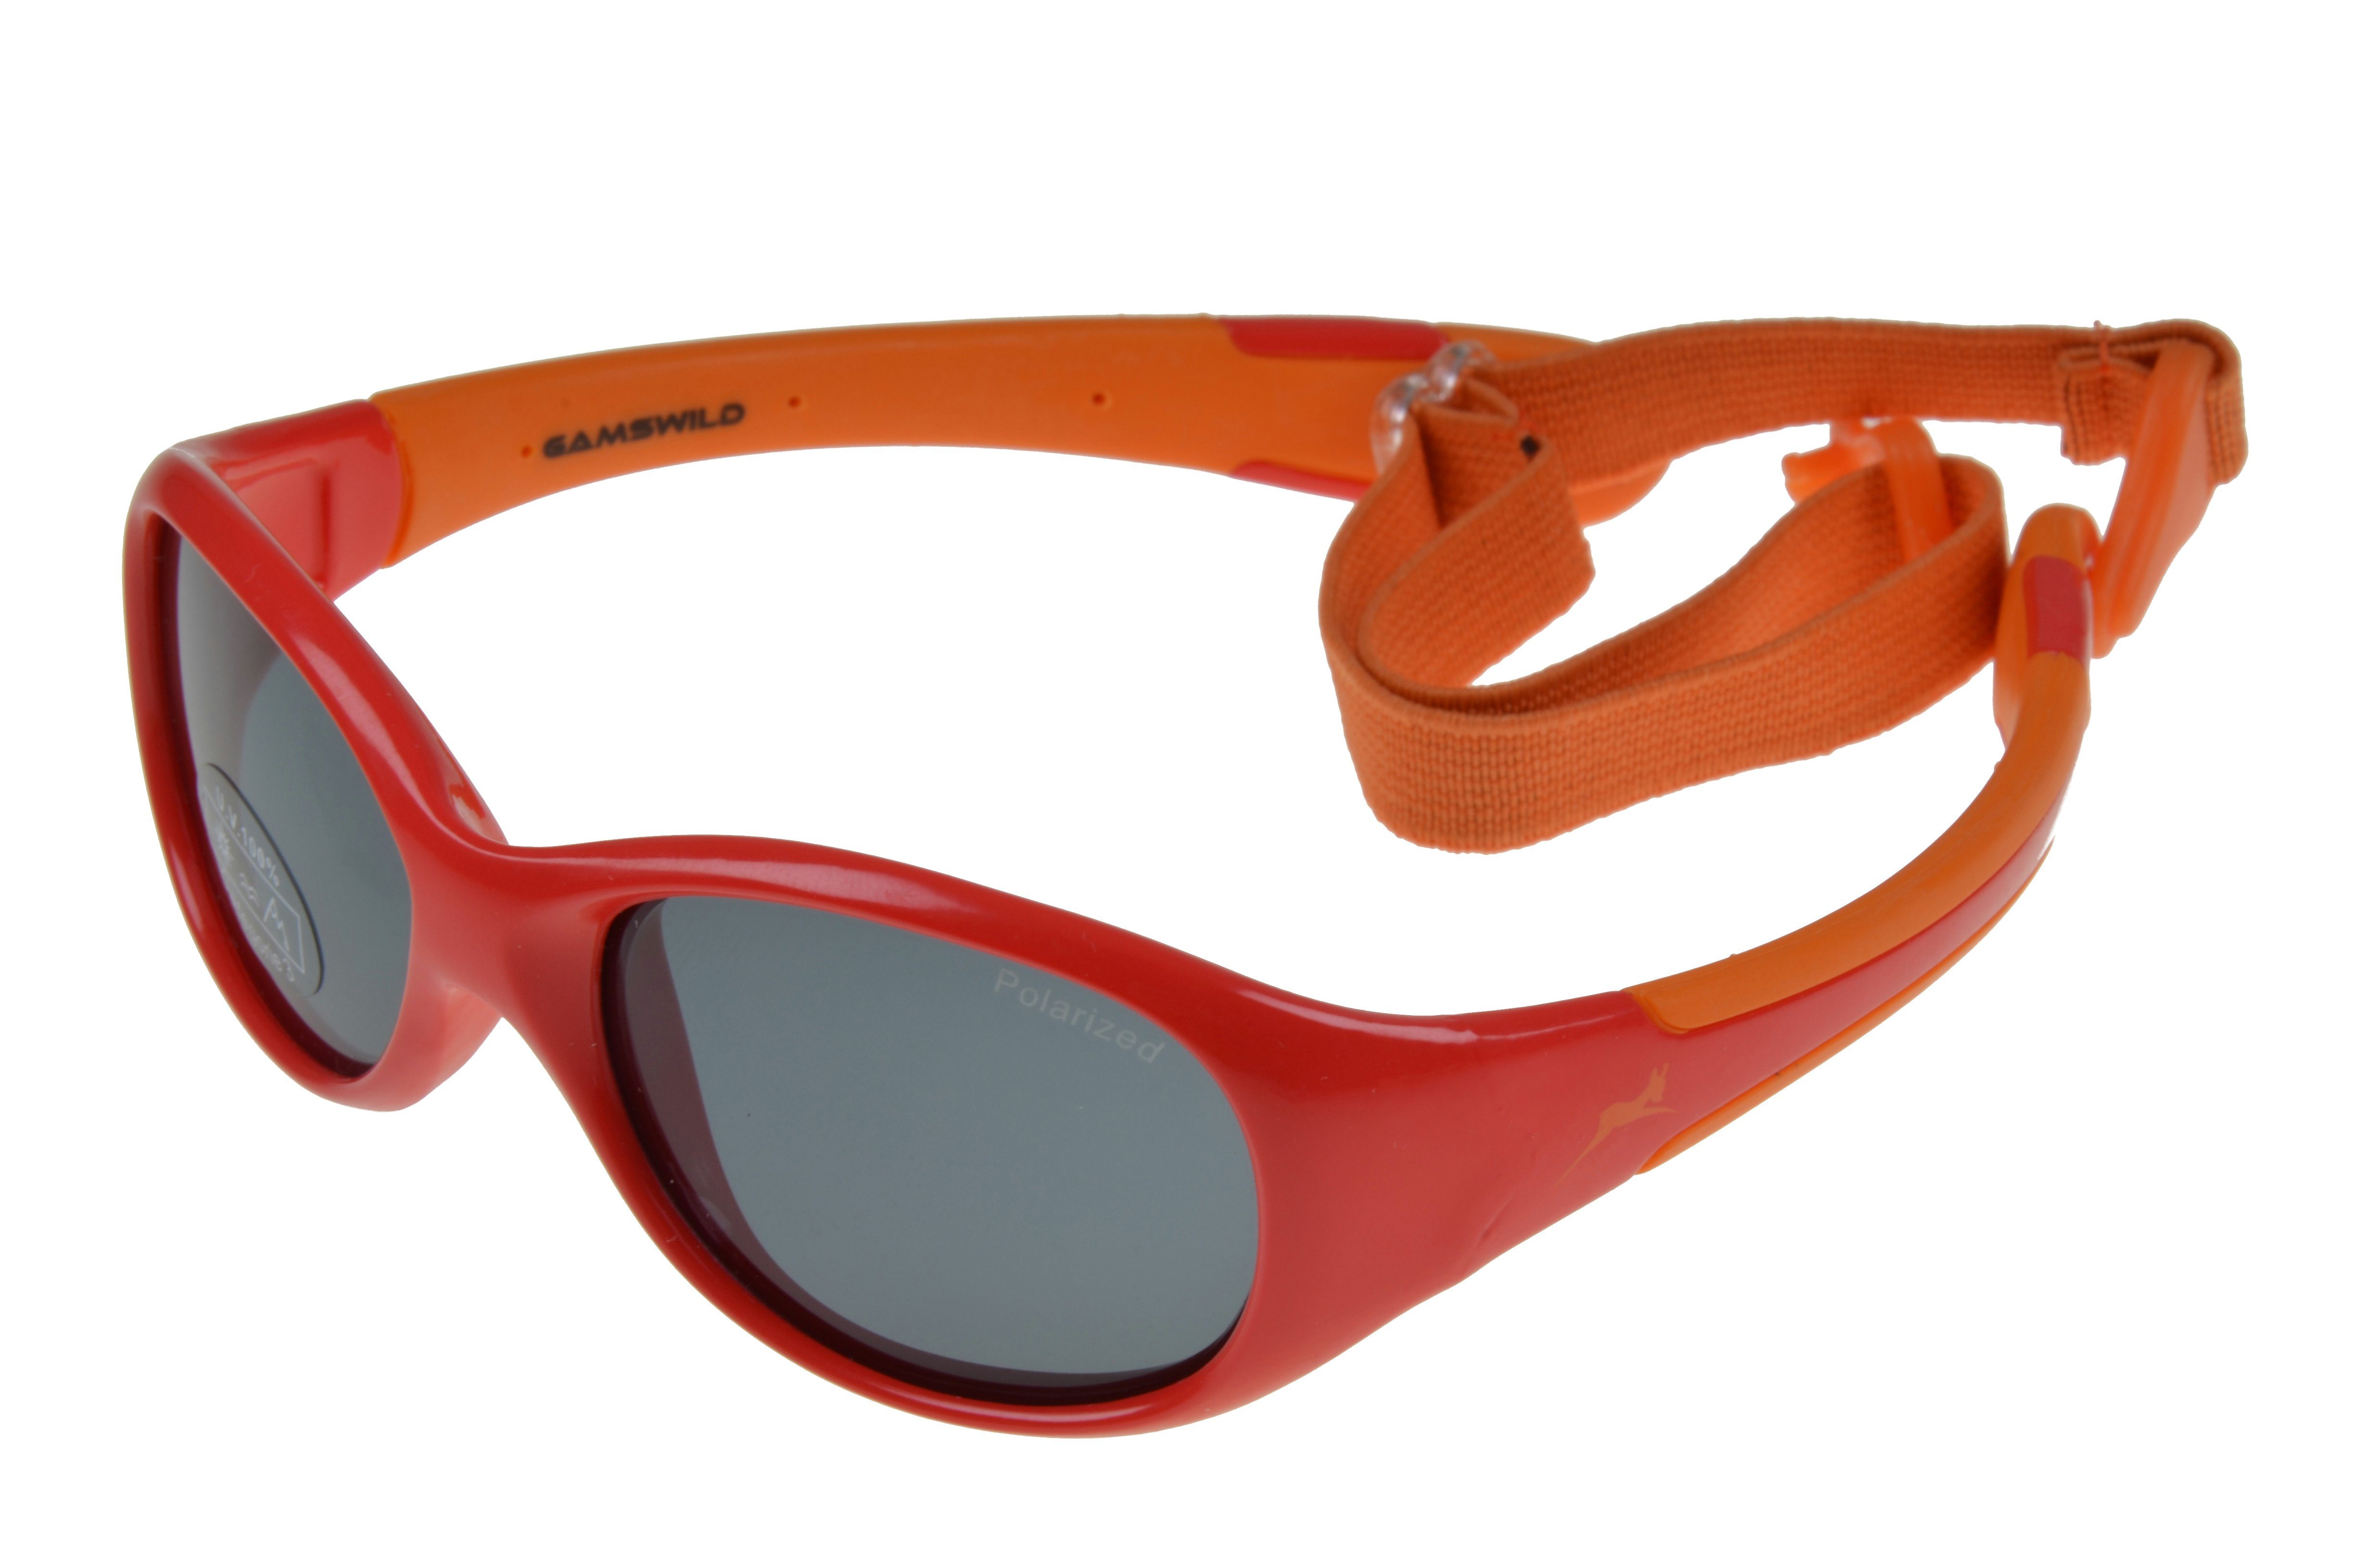 Gamswild Sonnenbrille UV400 GAMSKIDS Kinderbrille 2-5 Jahre Kleinkindbrille mit Brillenband Mädchen Jungen kids Modell WK5618 in rosa, grün, rot-orange